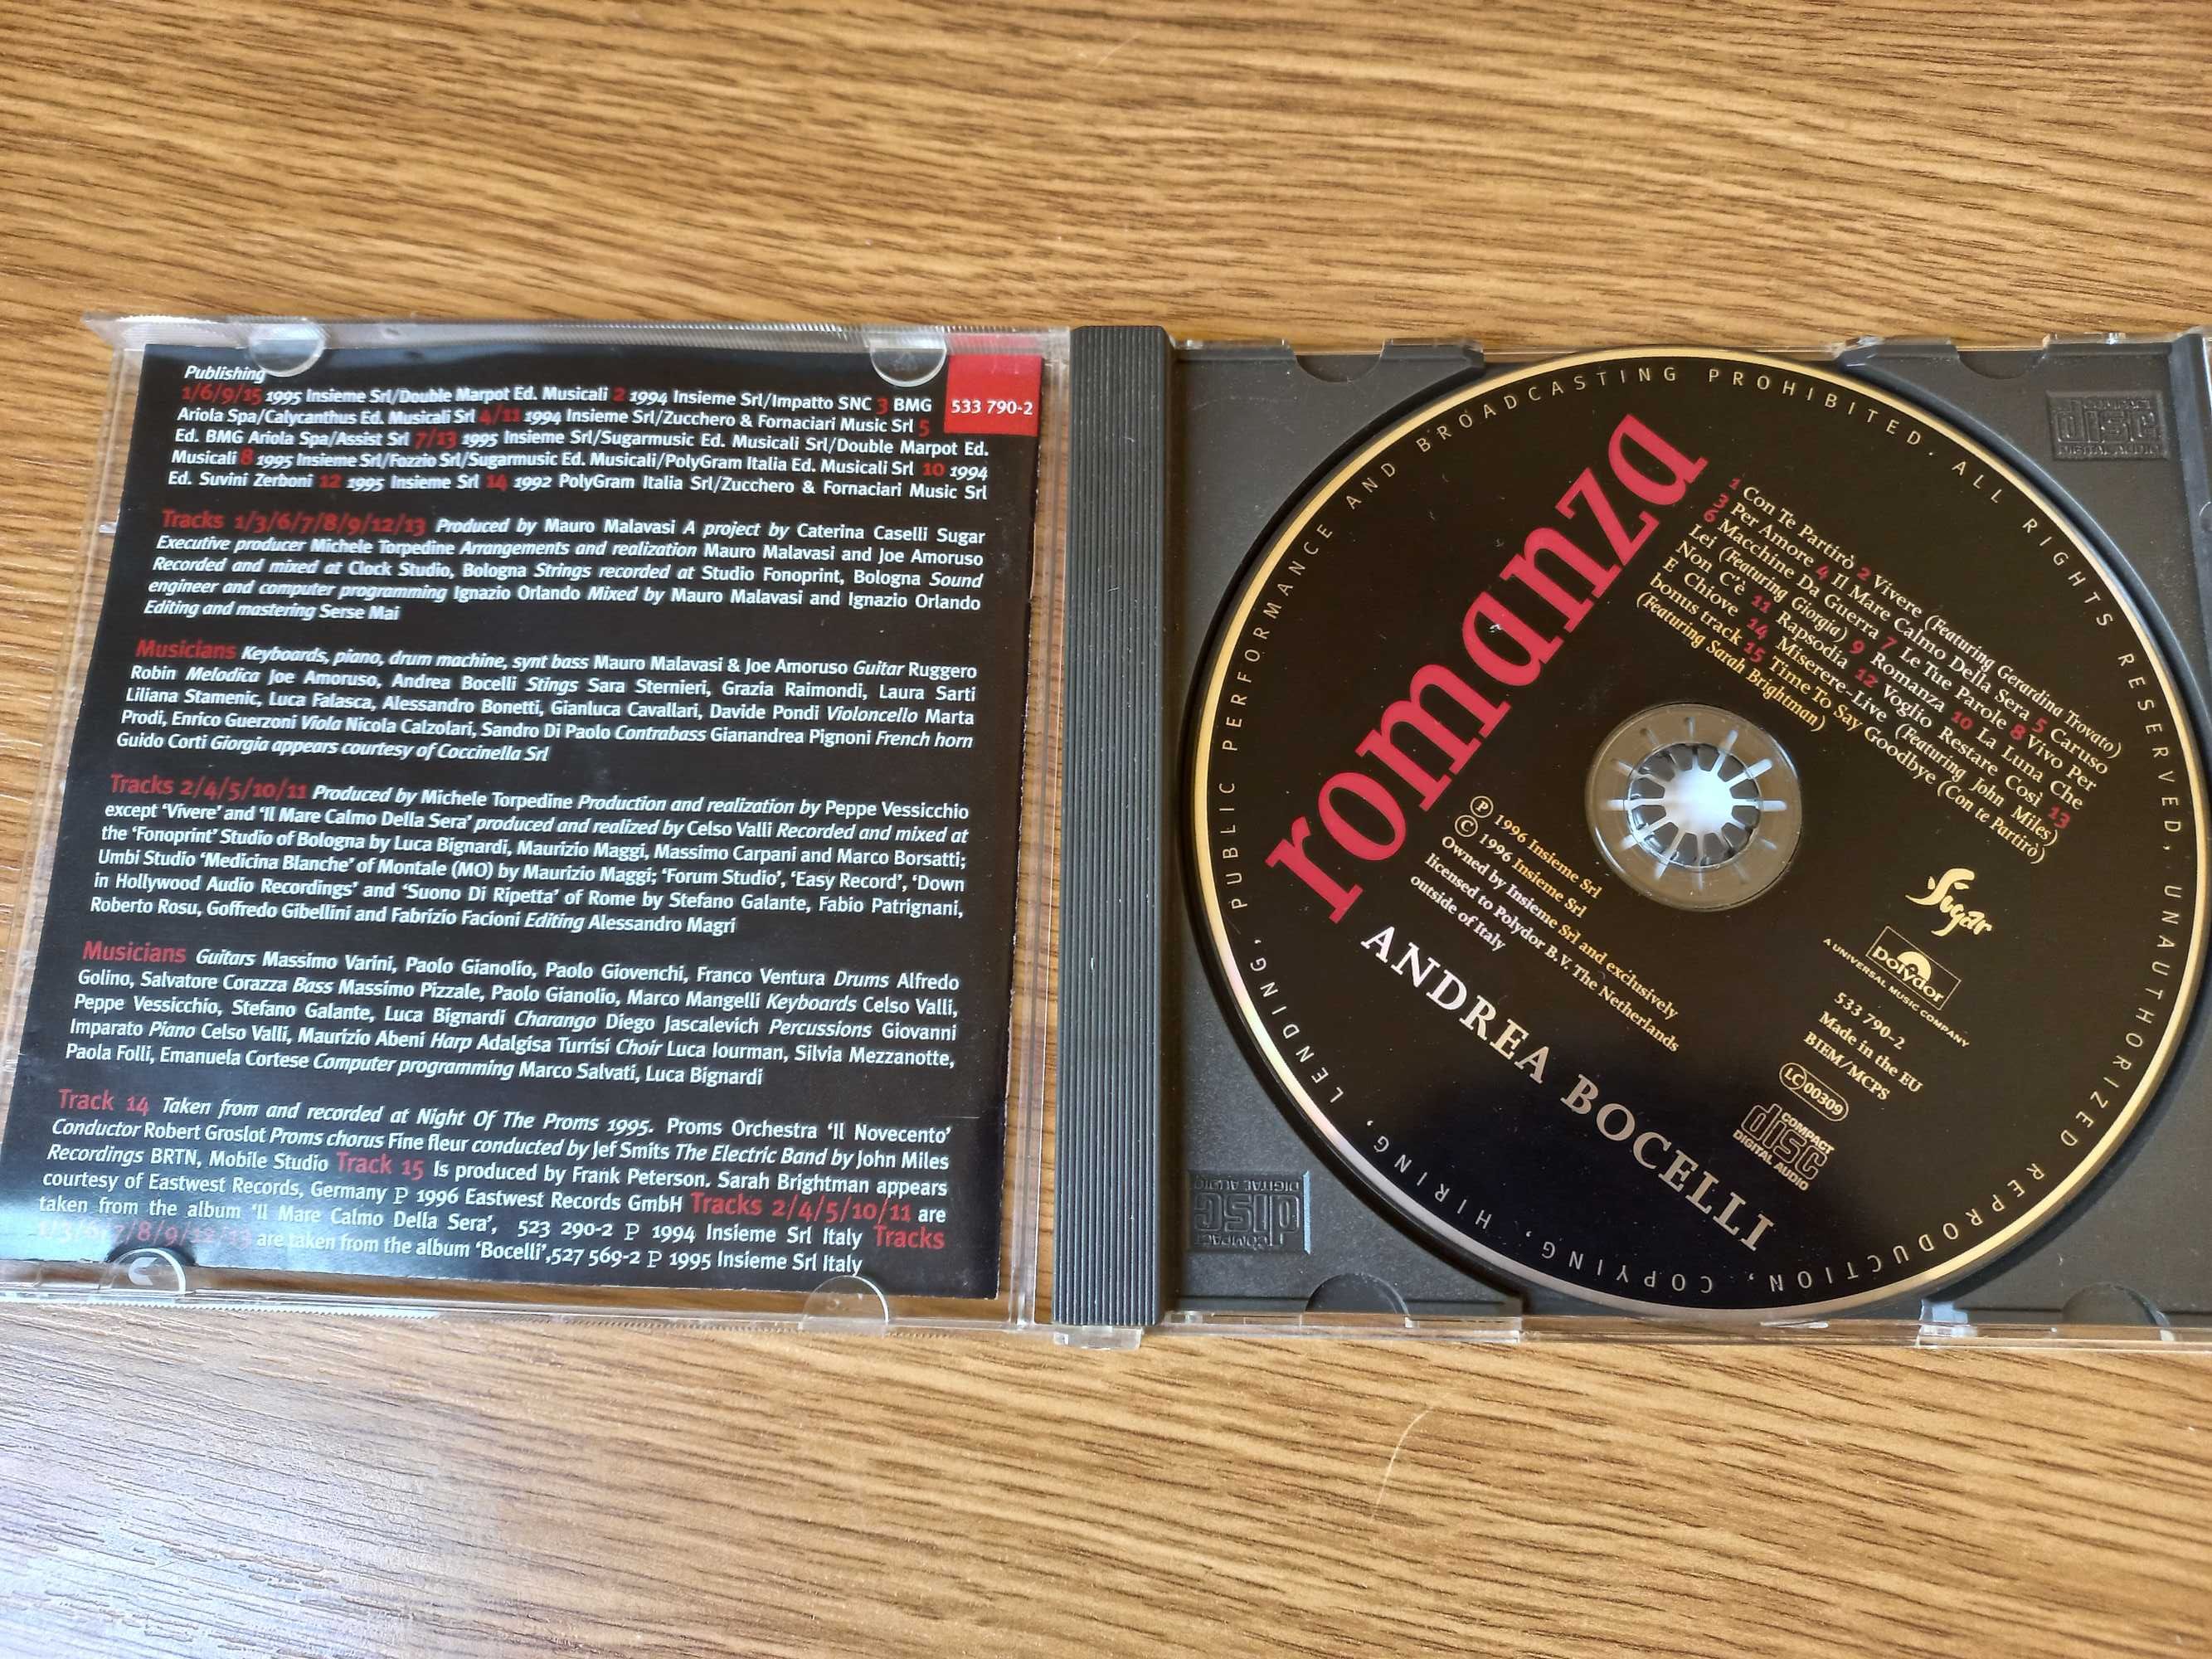 !! przy zakupie 2 płyta CD za 5 zł !! - Andrea Bocelli, "Romanza"